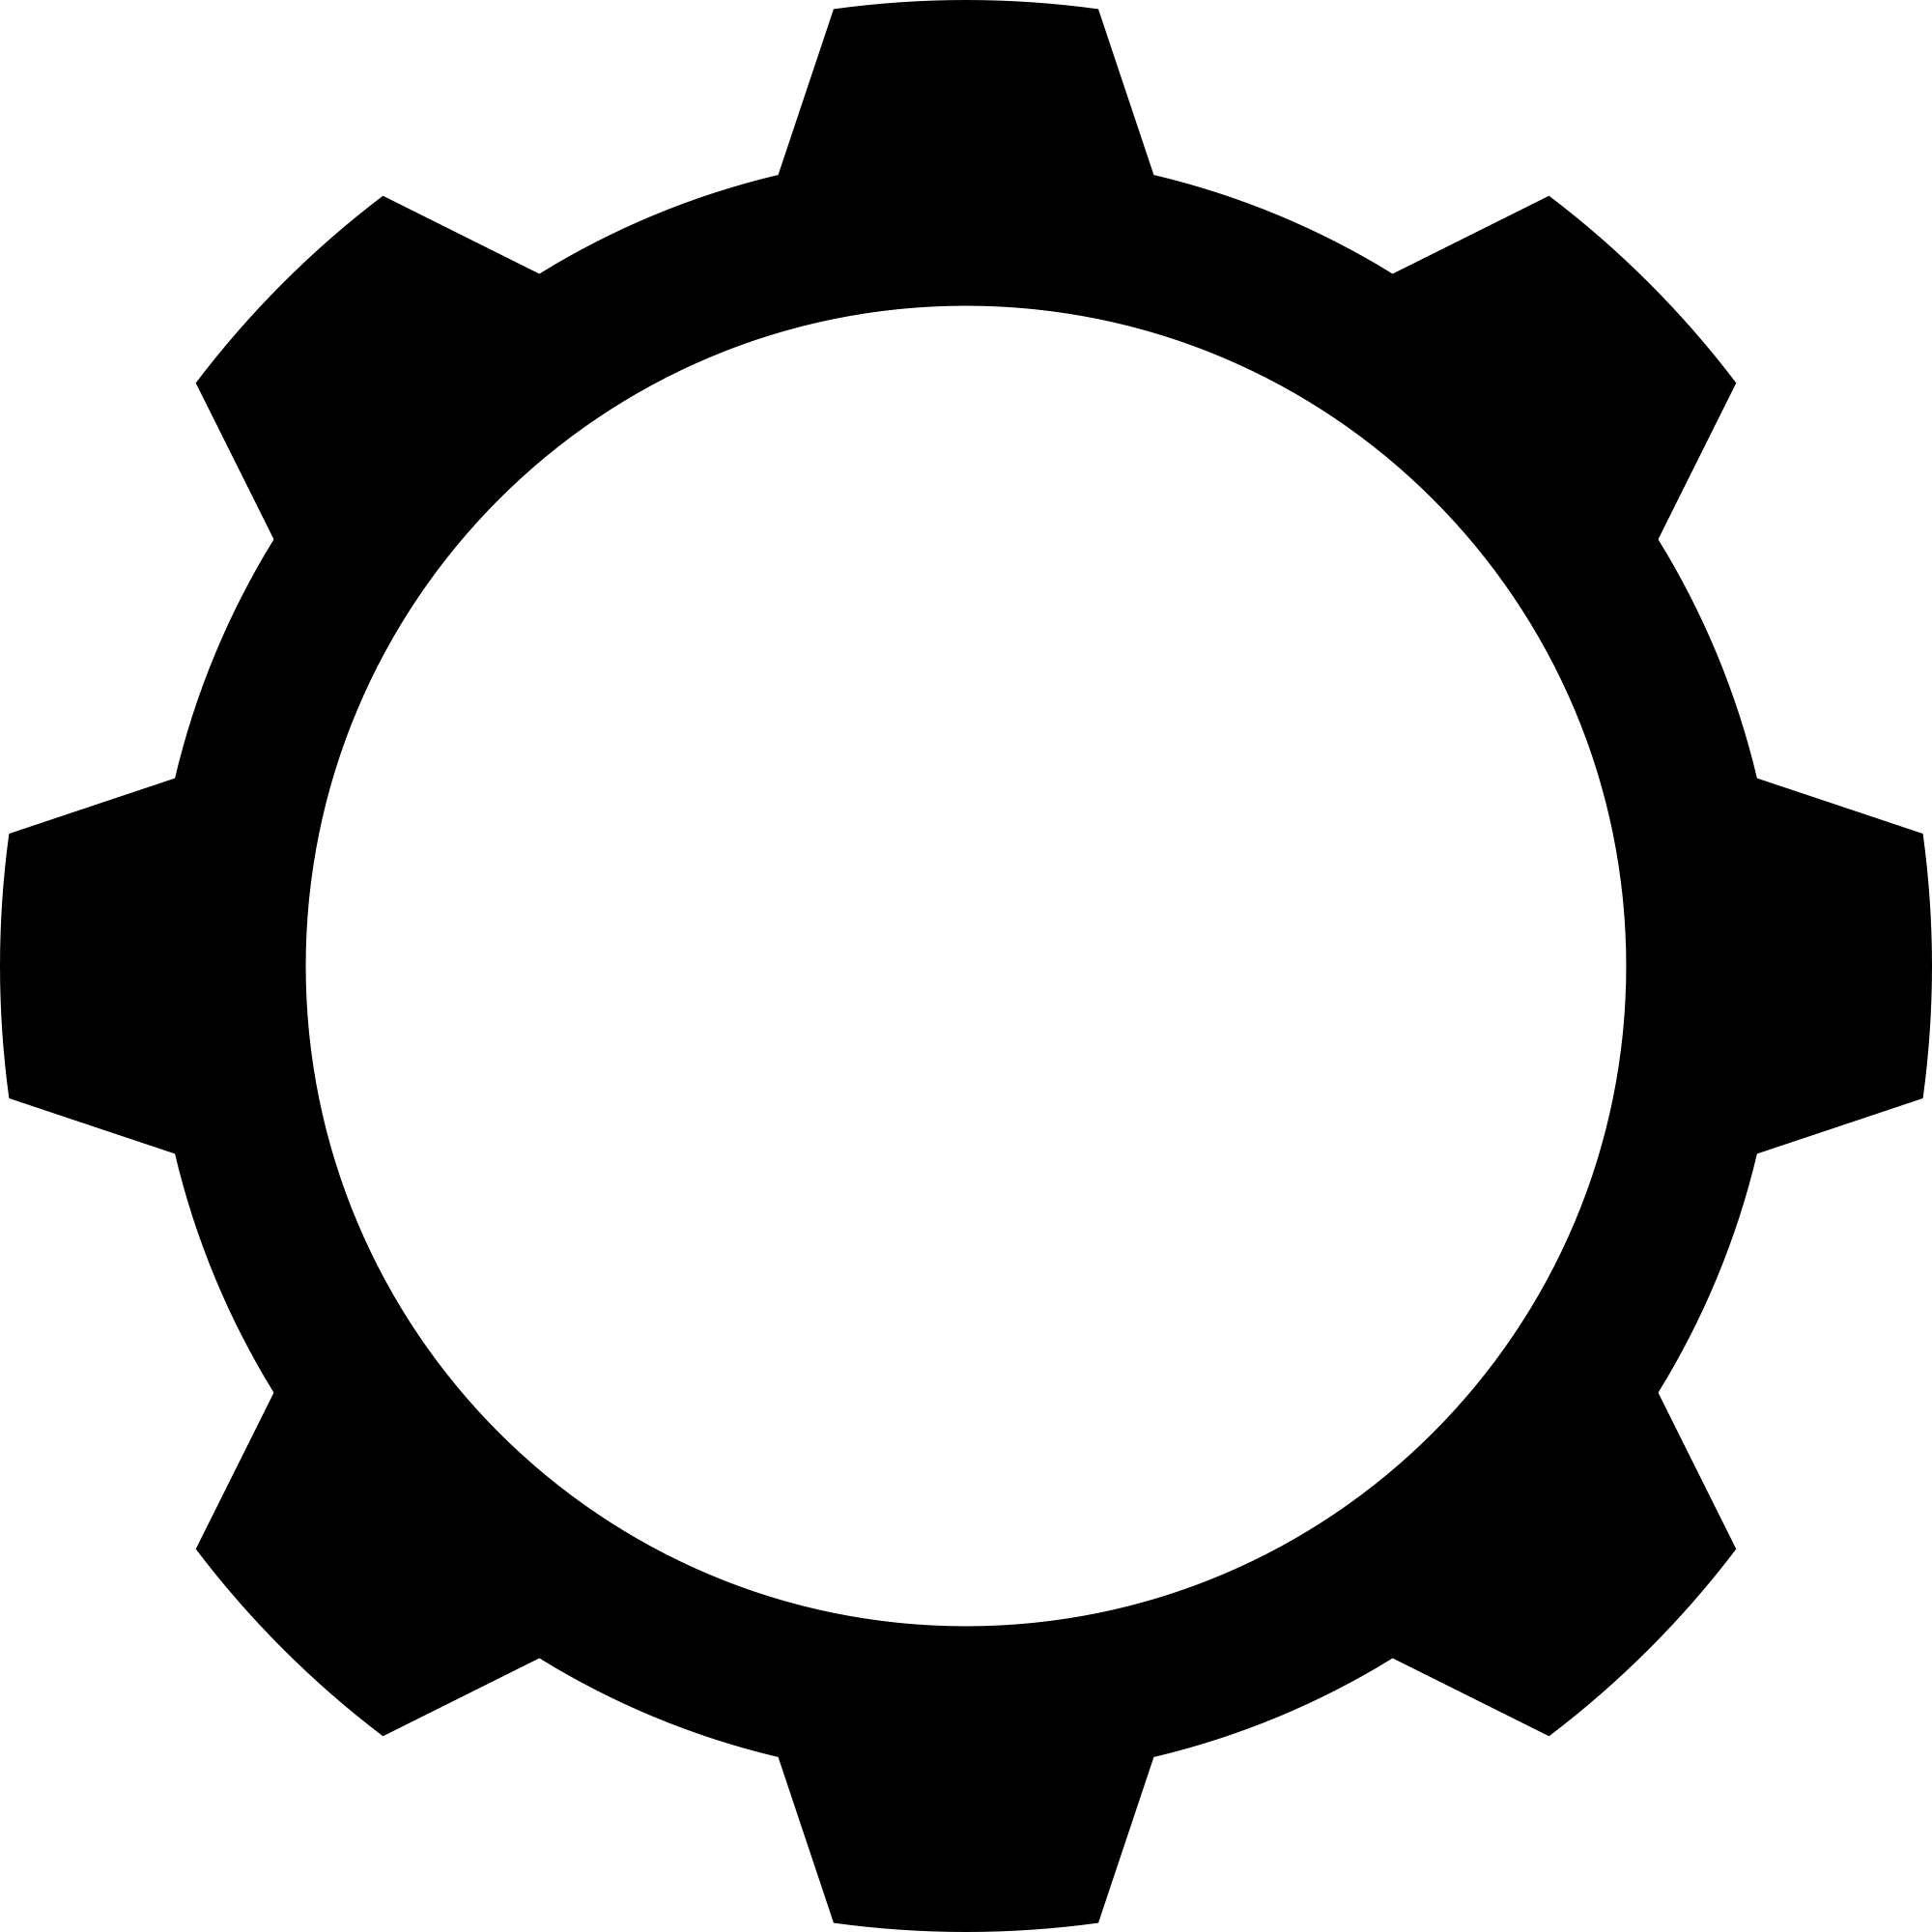 Gear logo vector.